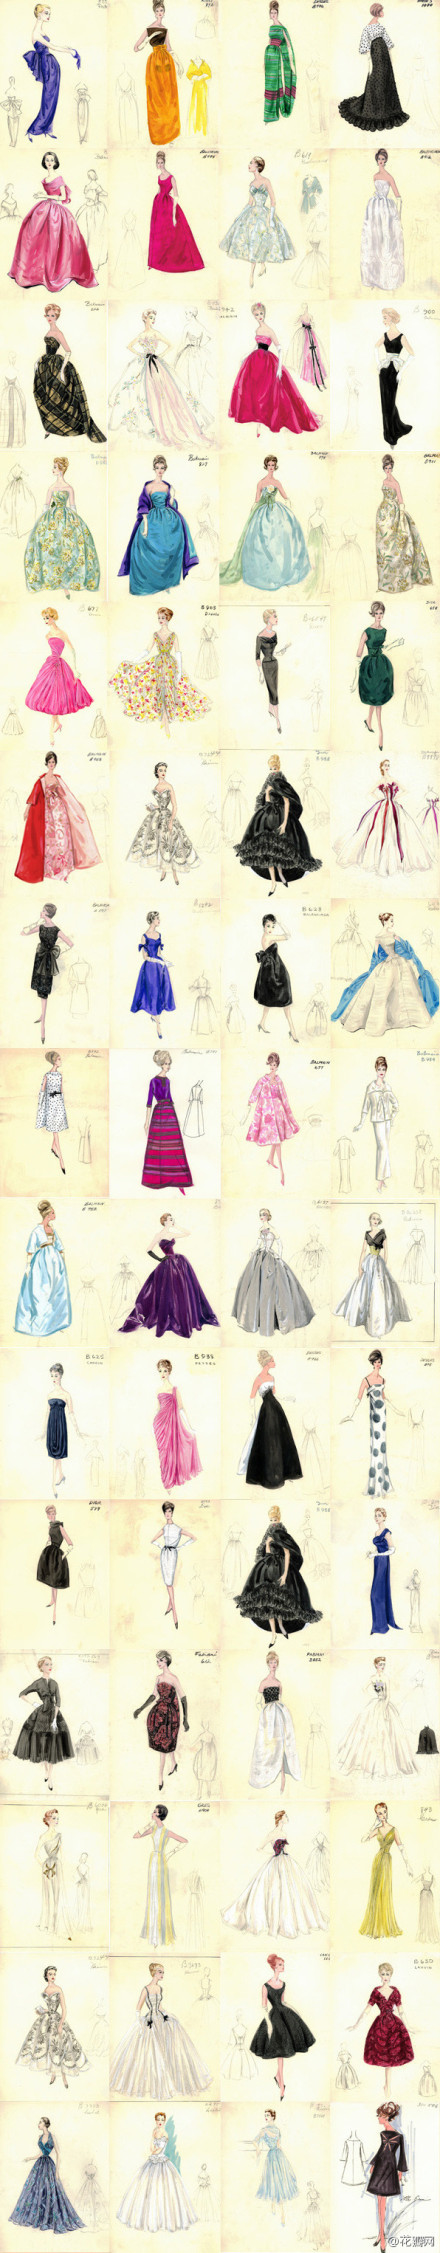 超有爱的服装设计手稿,各式美裙,各种细节.